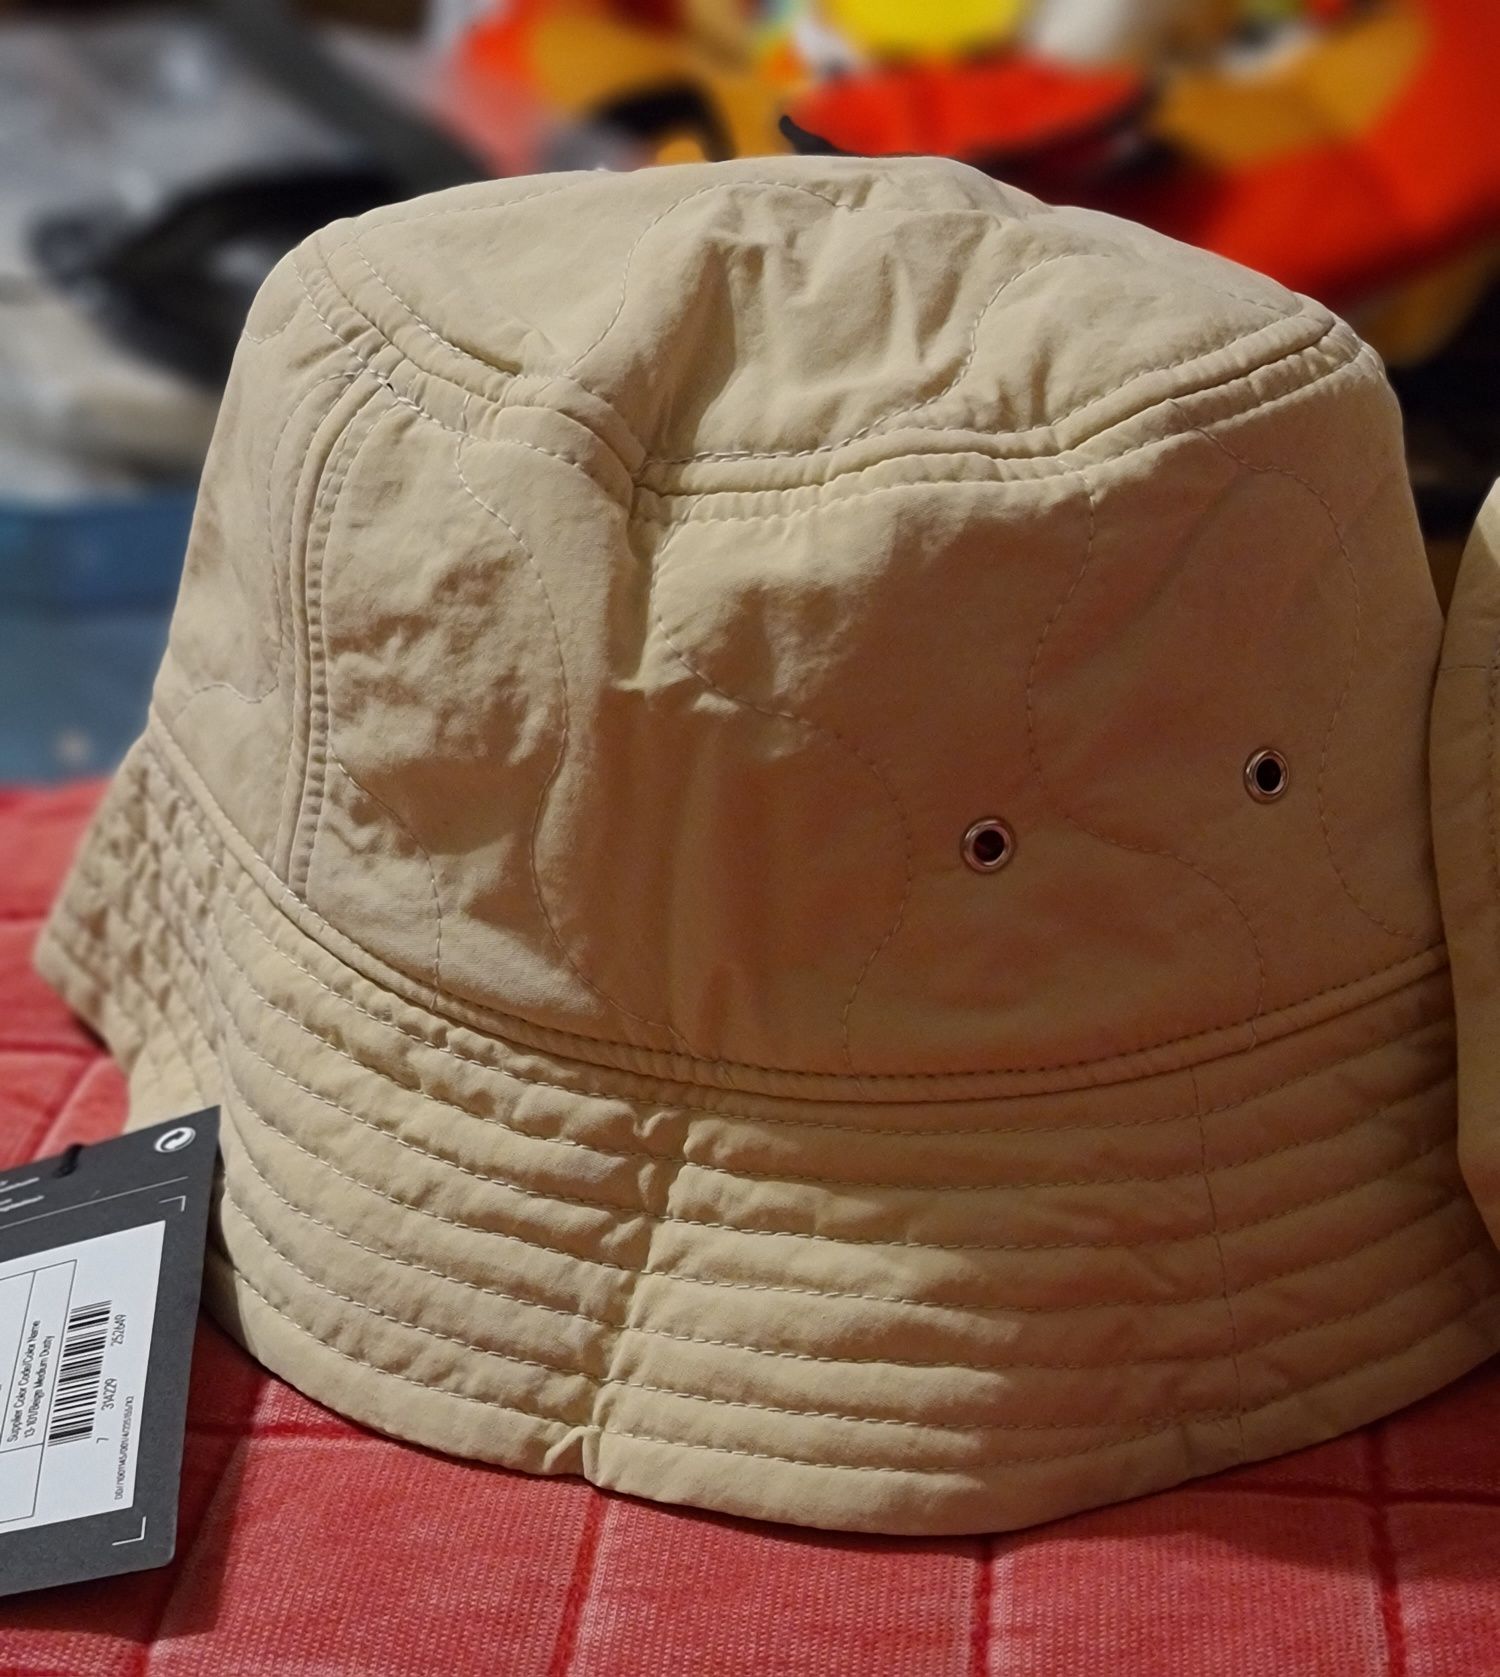 Pălărie/Bucket Hat S/M